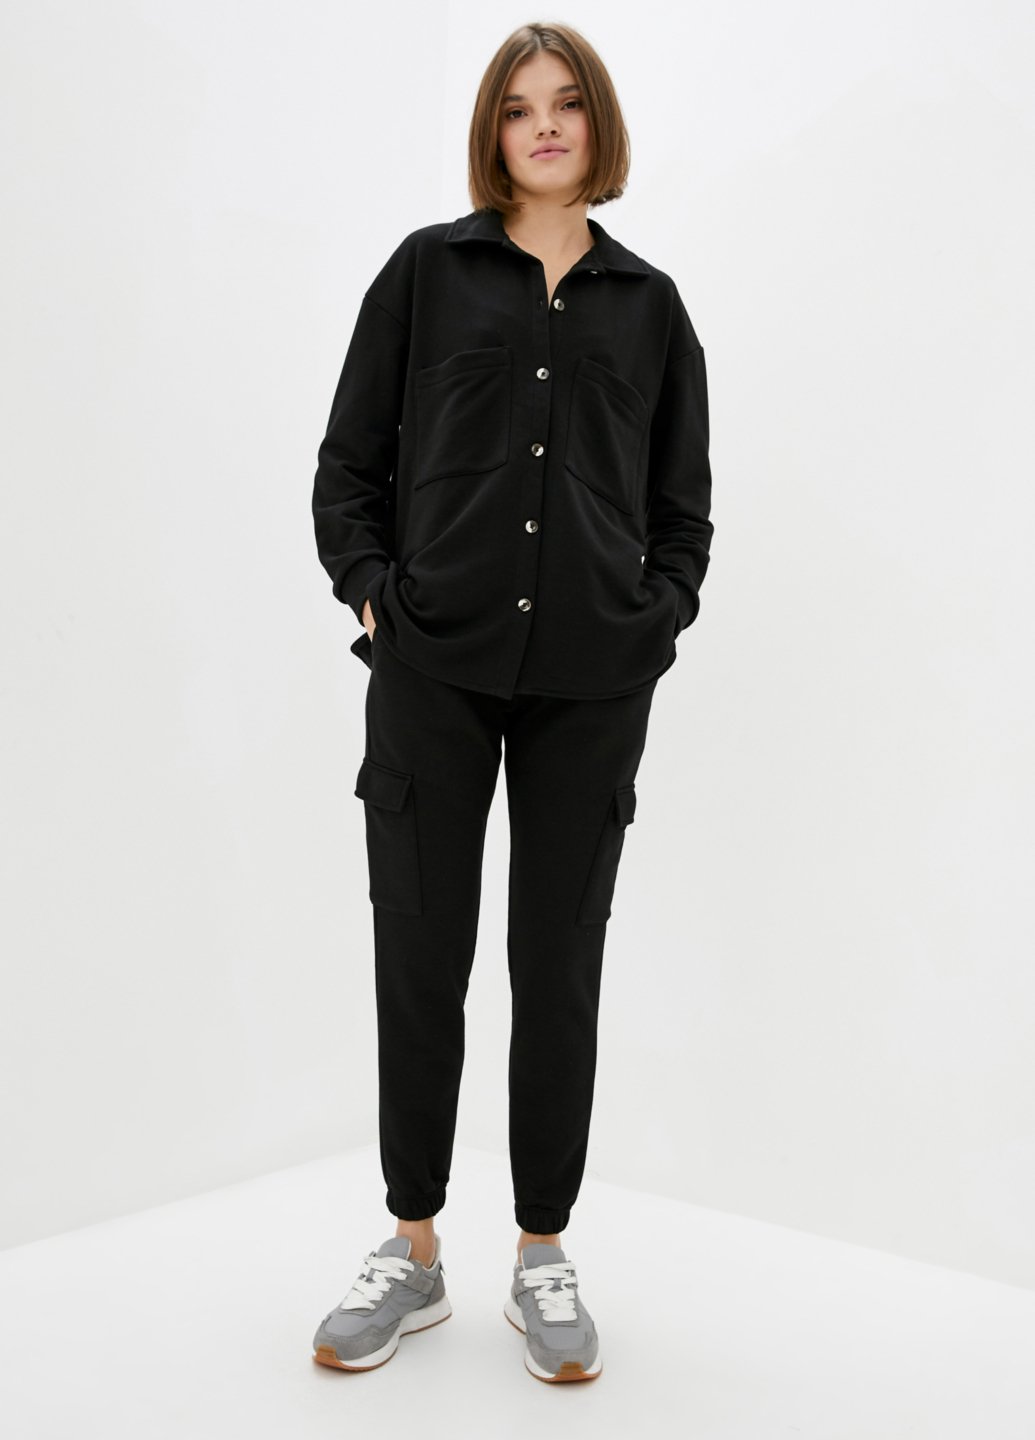 Купить Костюм женский с рубашкой черного цвета Merlini Хакни 100000071, размер 42-44 в интернет-магазине